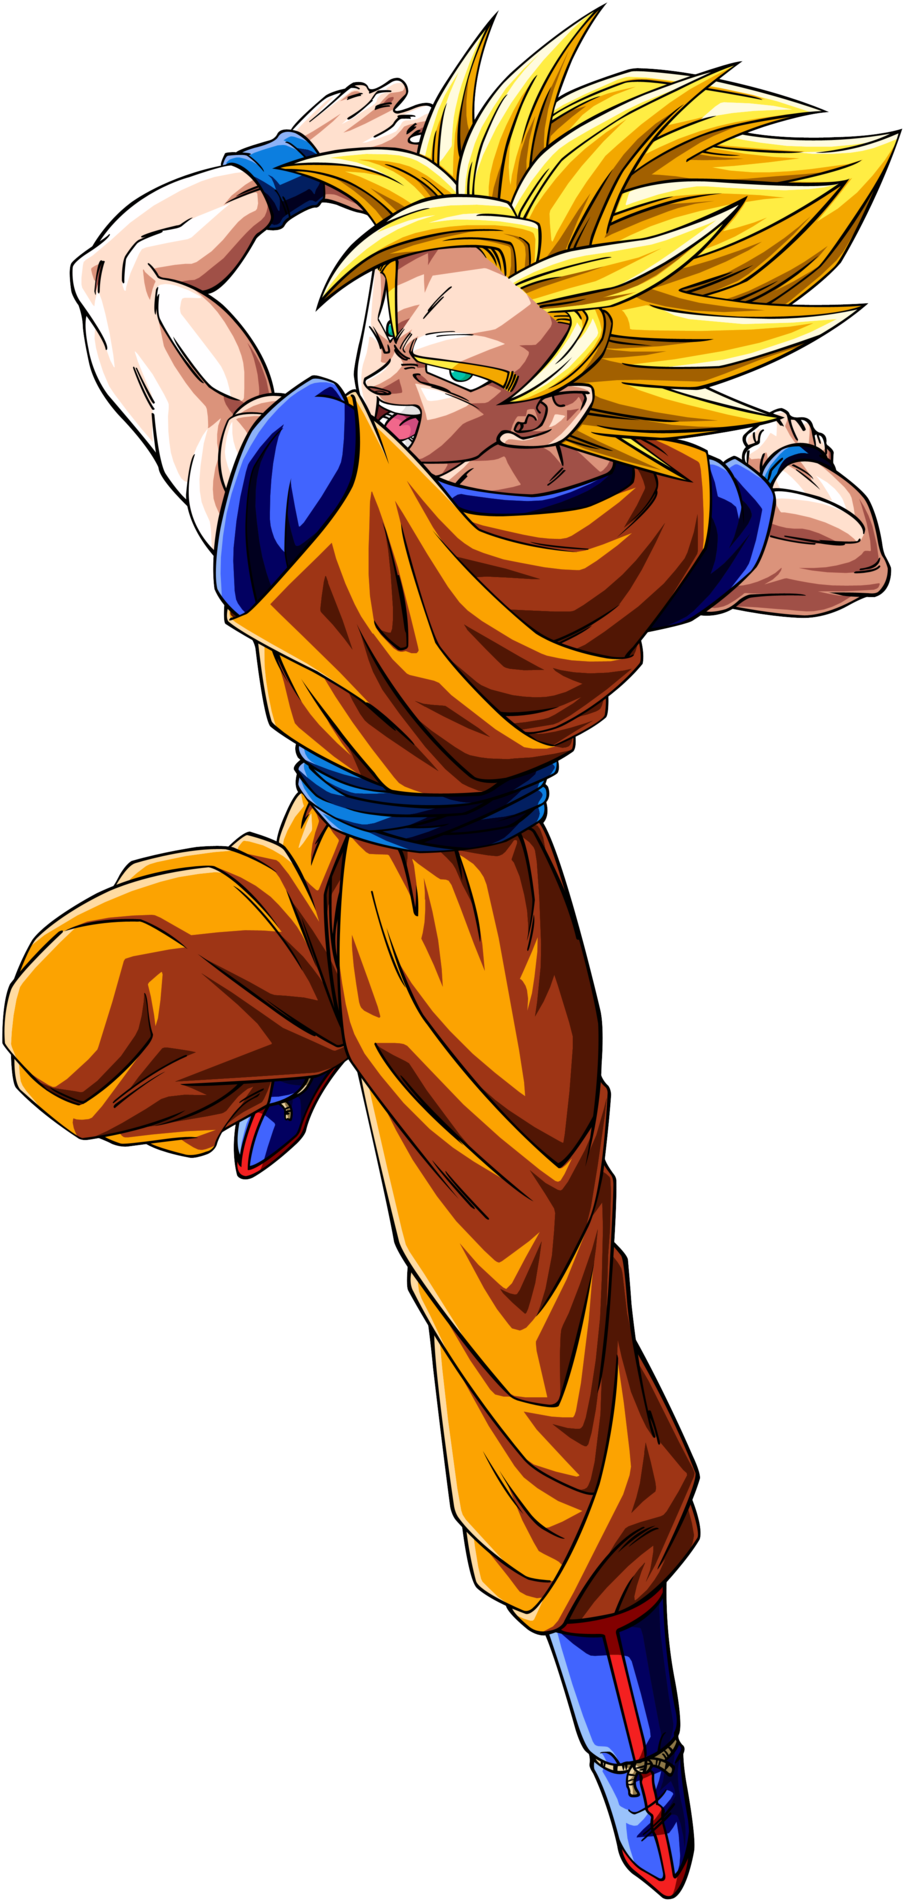 Download Goku Ssj - Dibujos De Dragon Ball Super Goku Ssj PNG Image with No  Background 